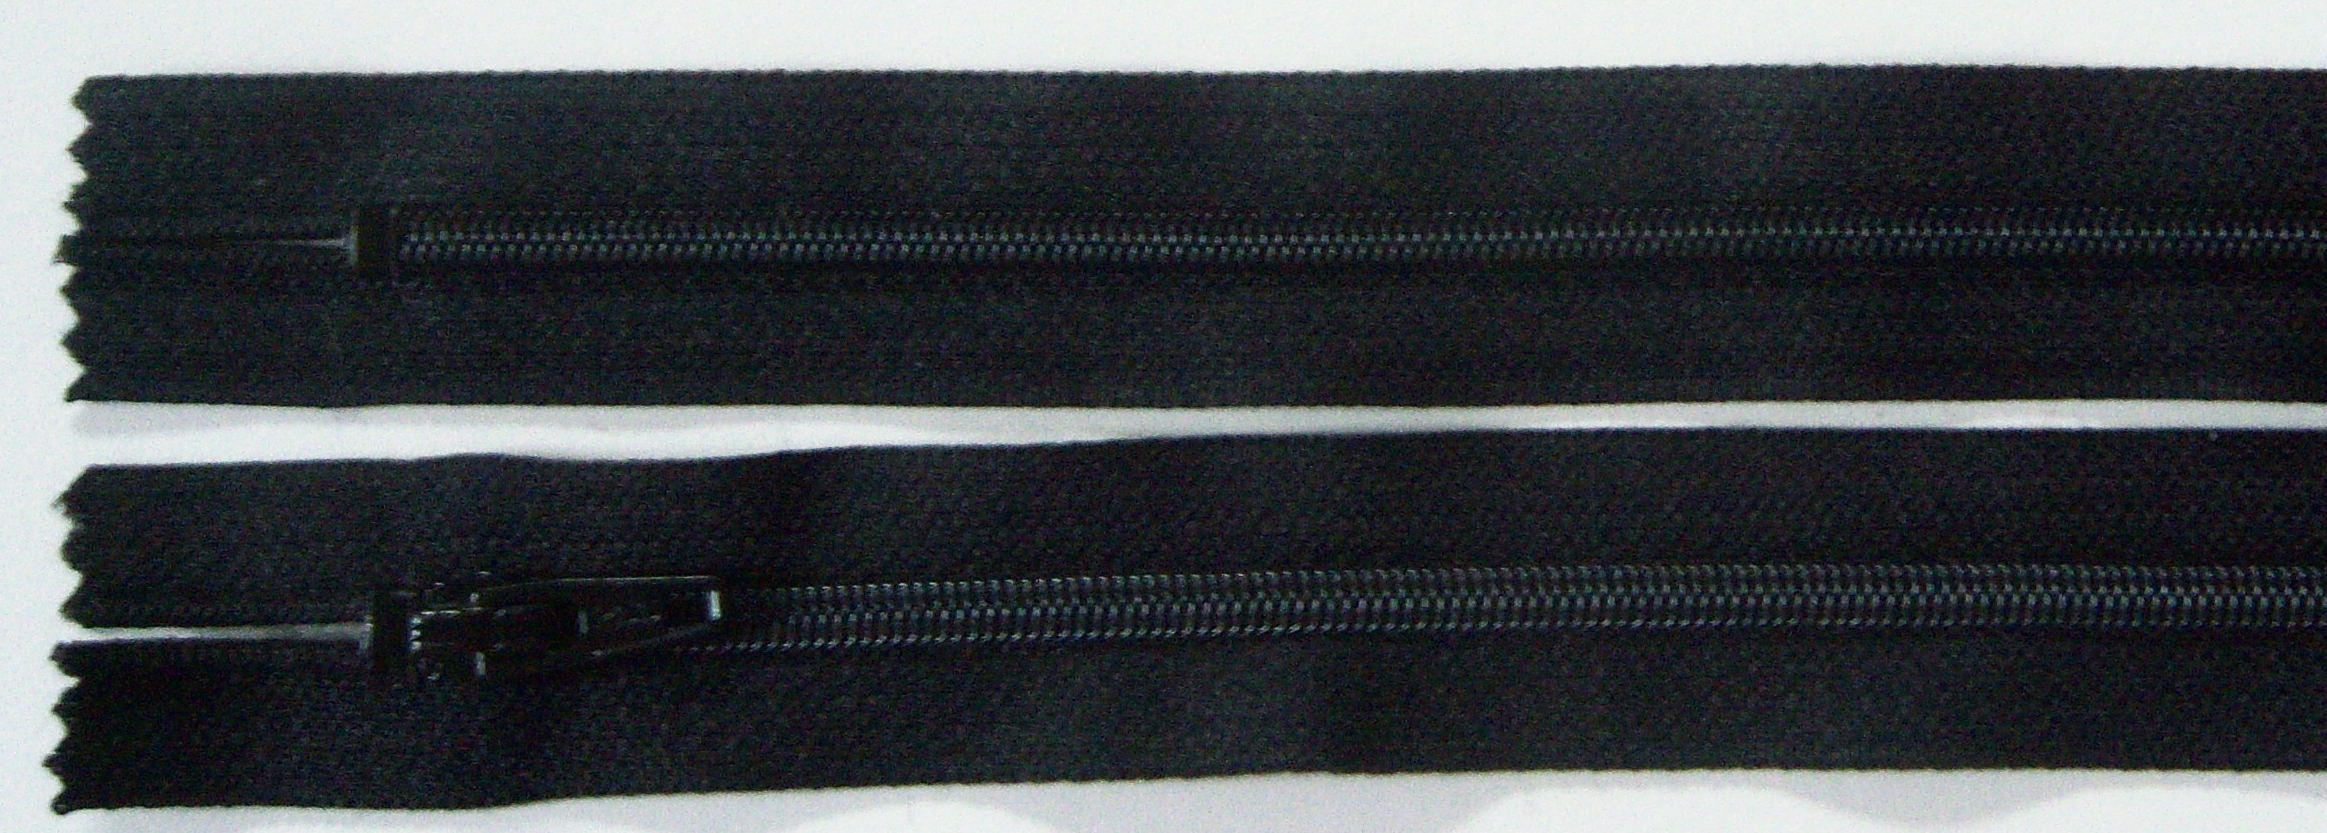 Black YKK 7" Coil Zipper